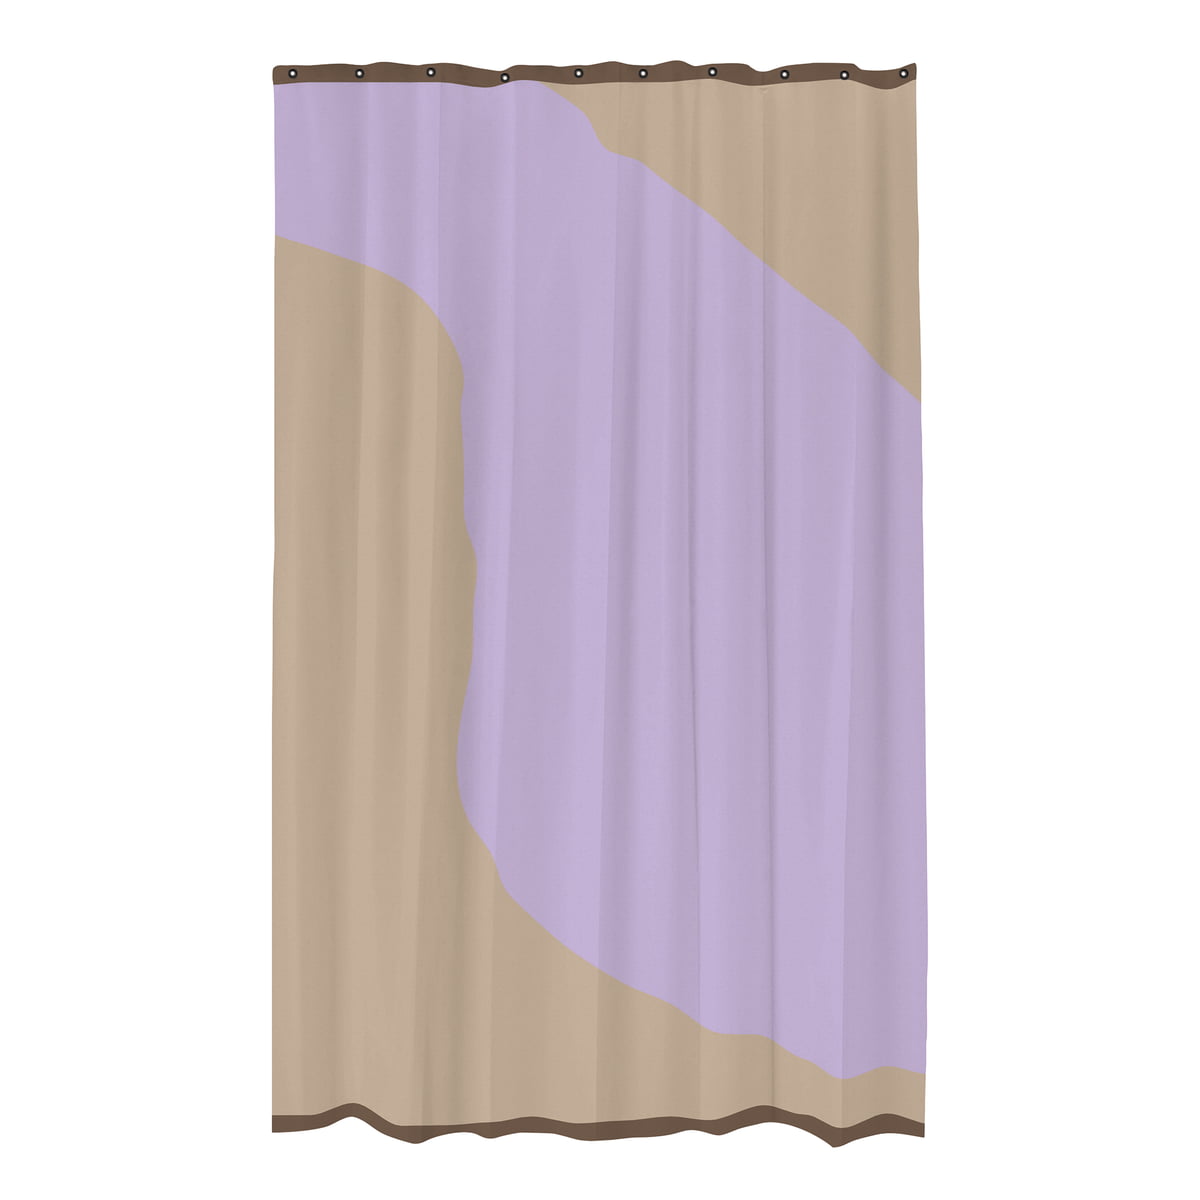 mette ditmer - nova arte rideau de douche, sable / violet